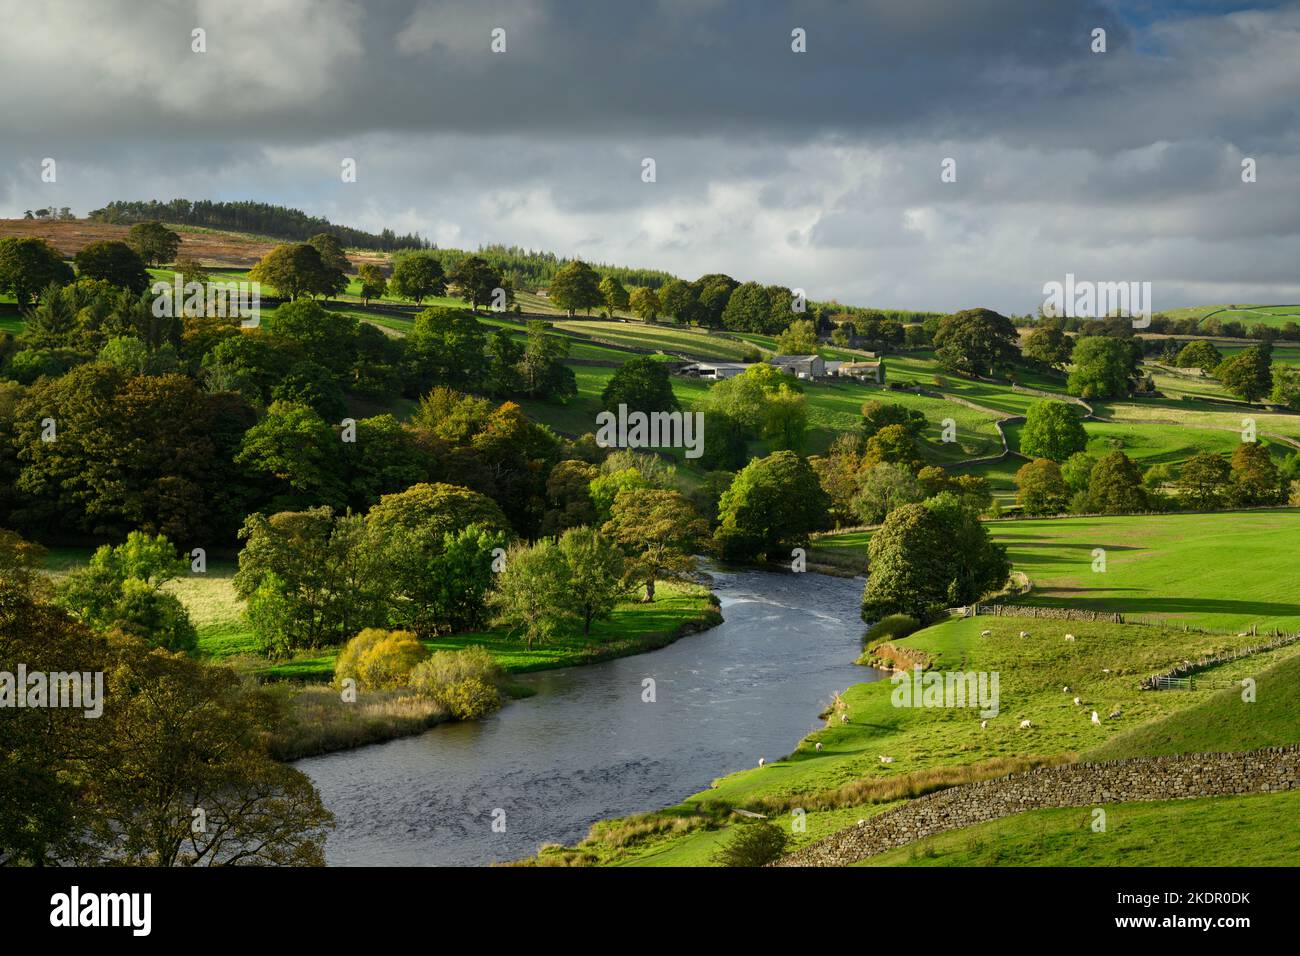 Paisaje pintoresco del valle rural (agua del río Wharfe, edificios de granja, árboles junto al río, pared de piedra, sol de la noche de otoño) - Yorkshire Dales, Inglaterra, Reino Unido. Foto de stock